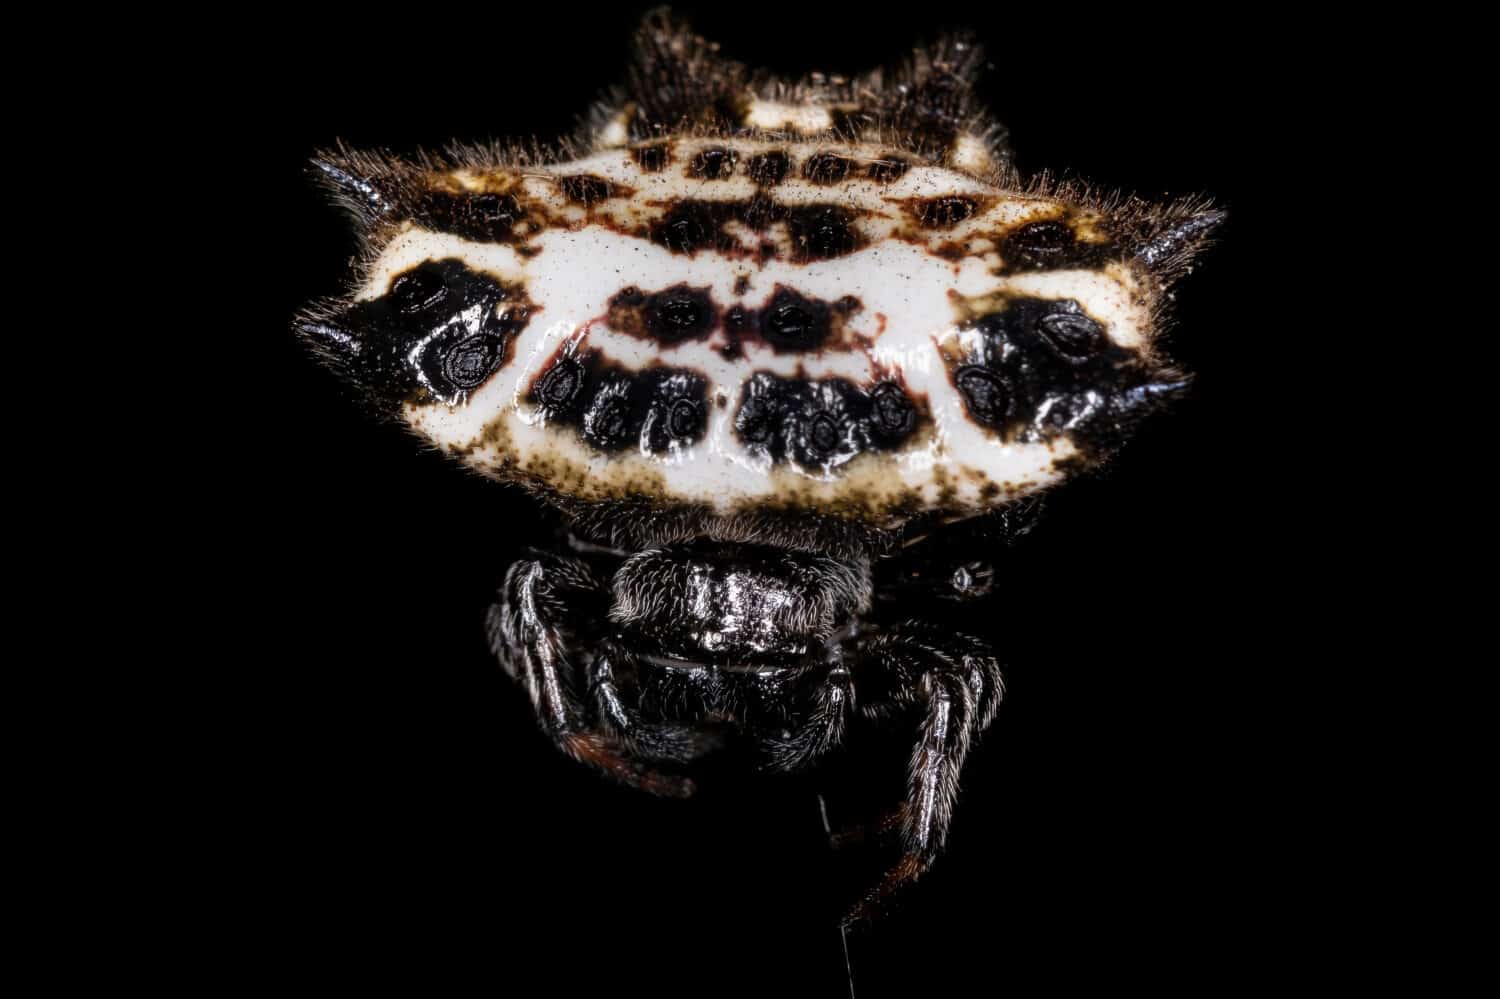 Orbweaver dal dorso spinoso adulto della specie Gasteracantha cancriformis